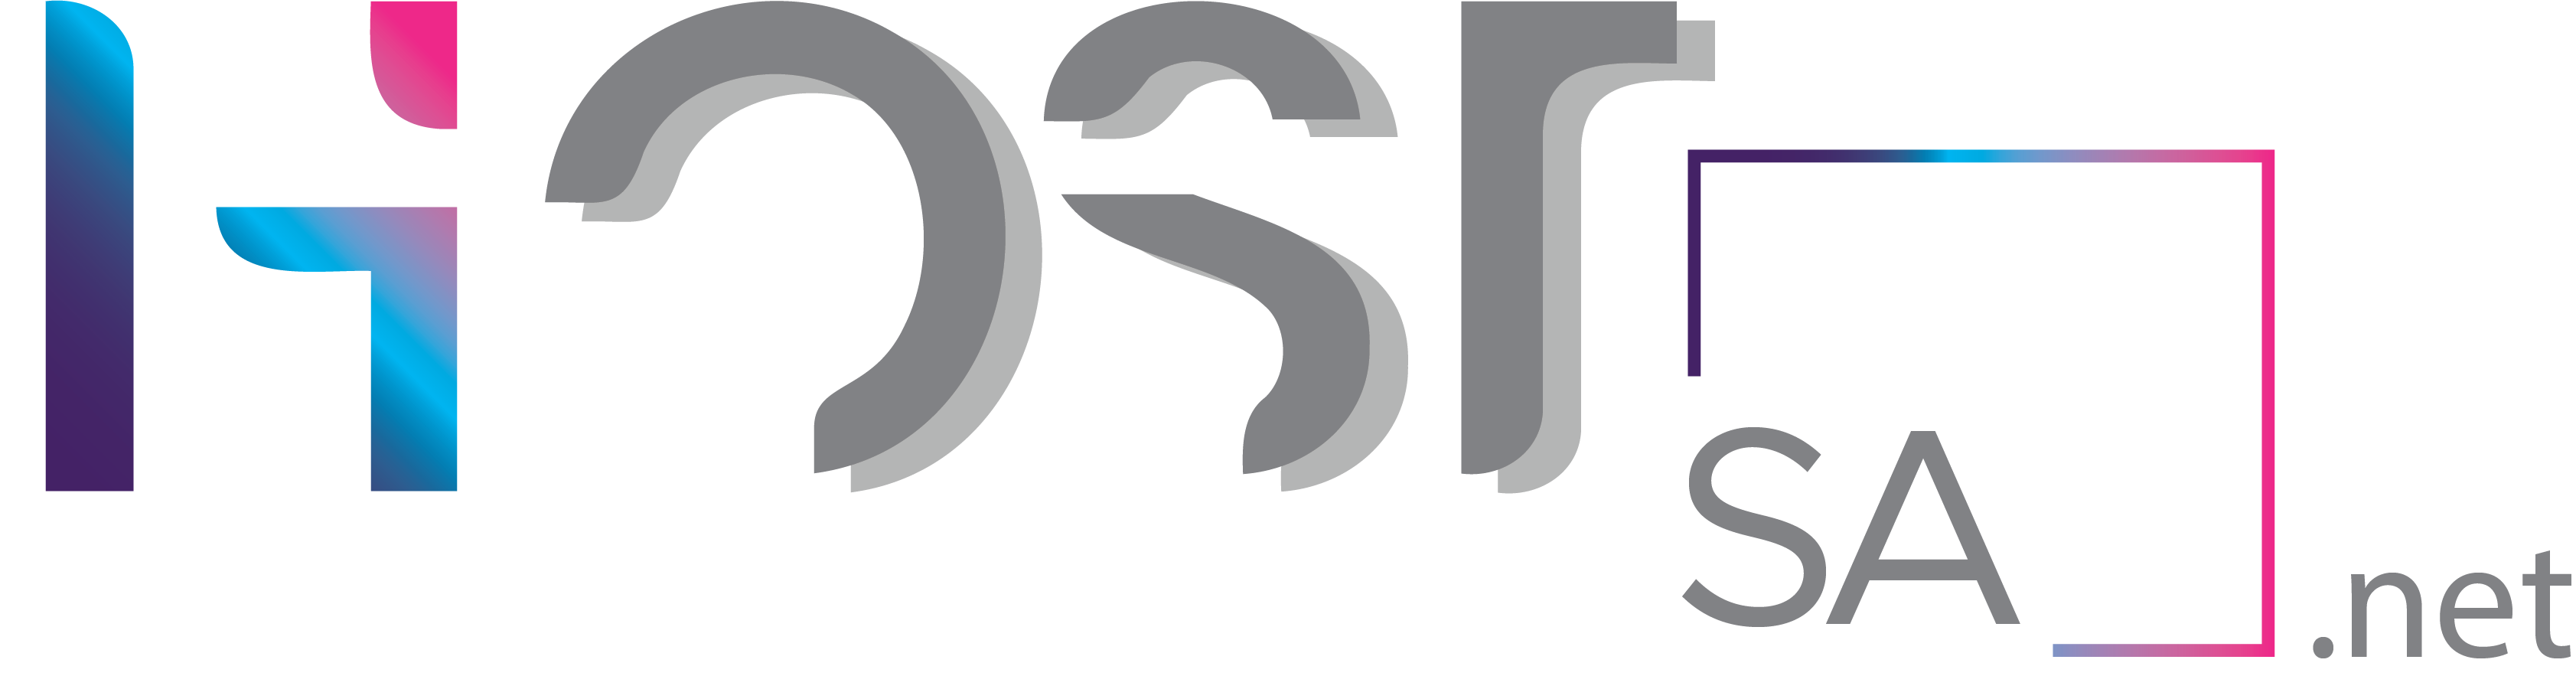 HostSA.net